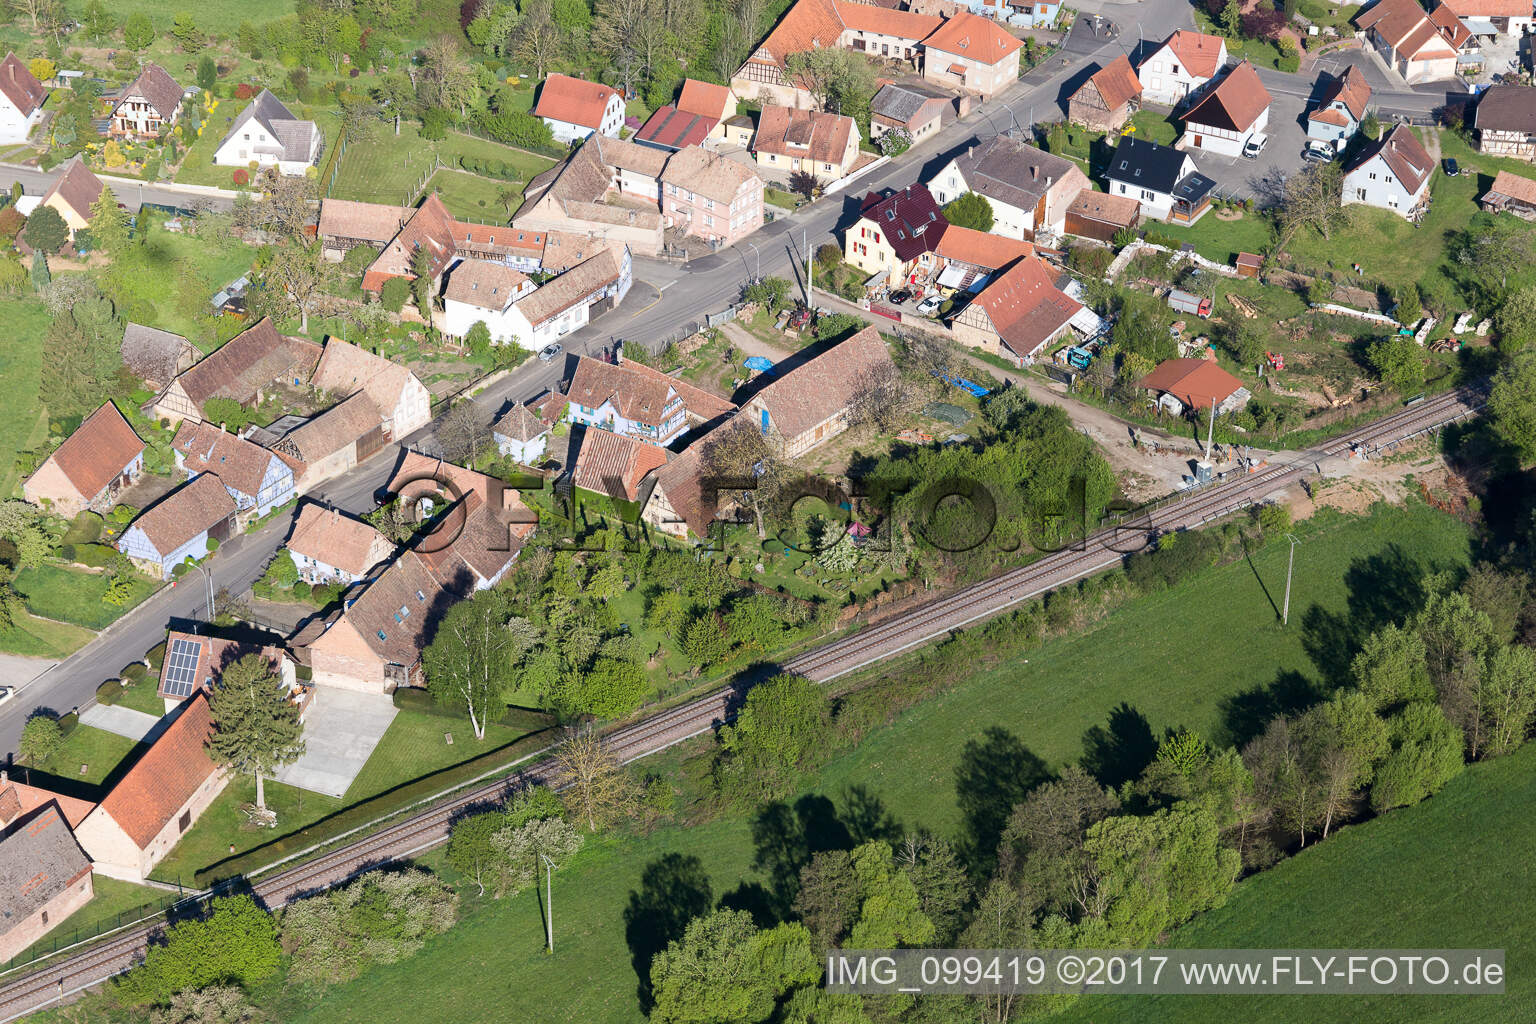 Uttenhoffen im Bundesland Bas-Rhin, Frankreich aus der Luft betrachtet